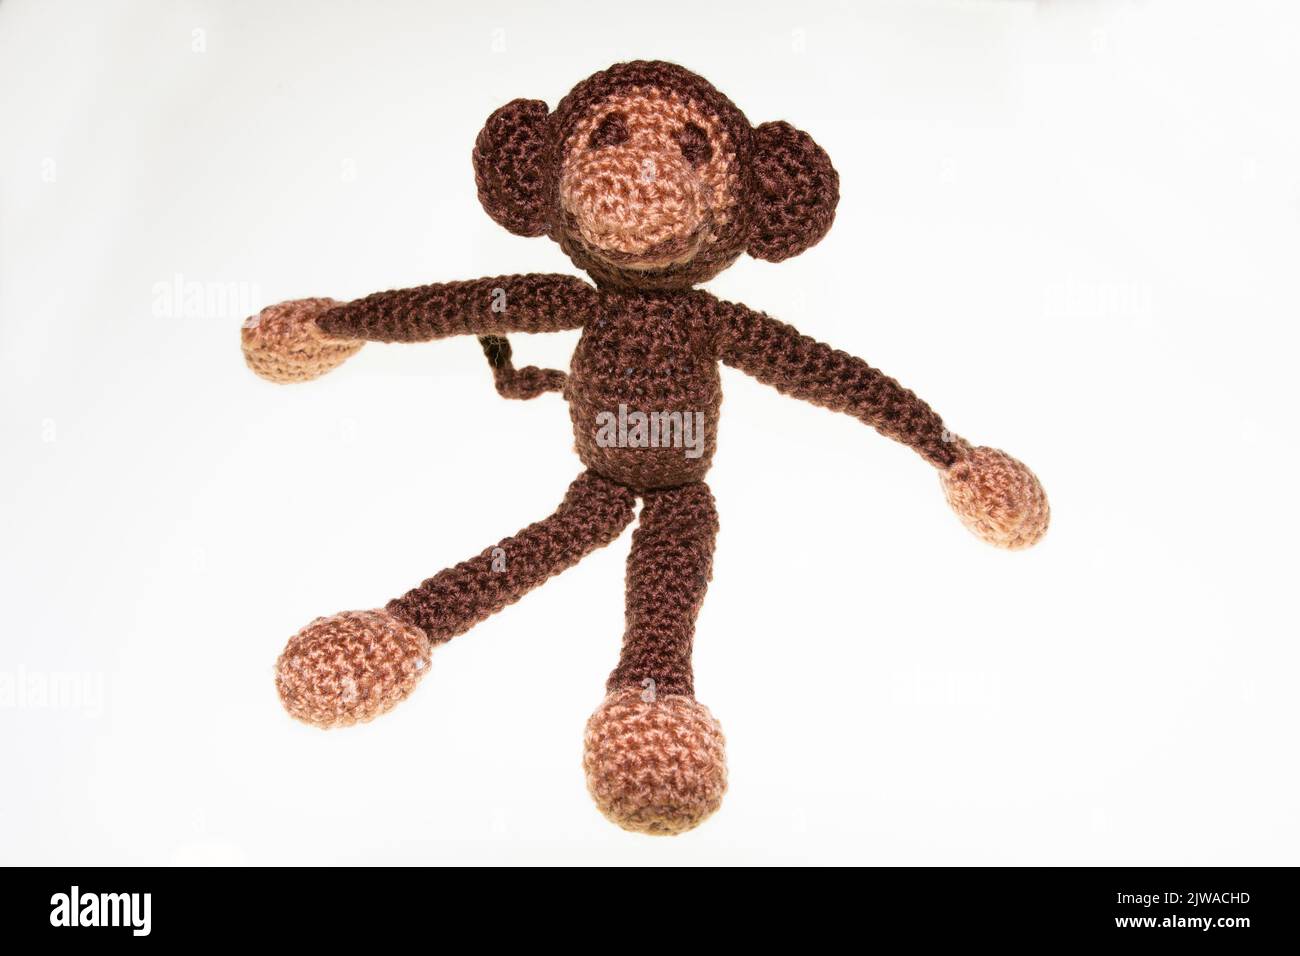 Gehäkelter kleiner Spielzeug Kuschel Affe mit Watte gefüllt Foto Stock